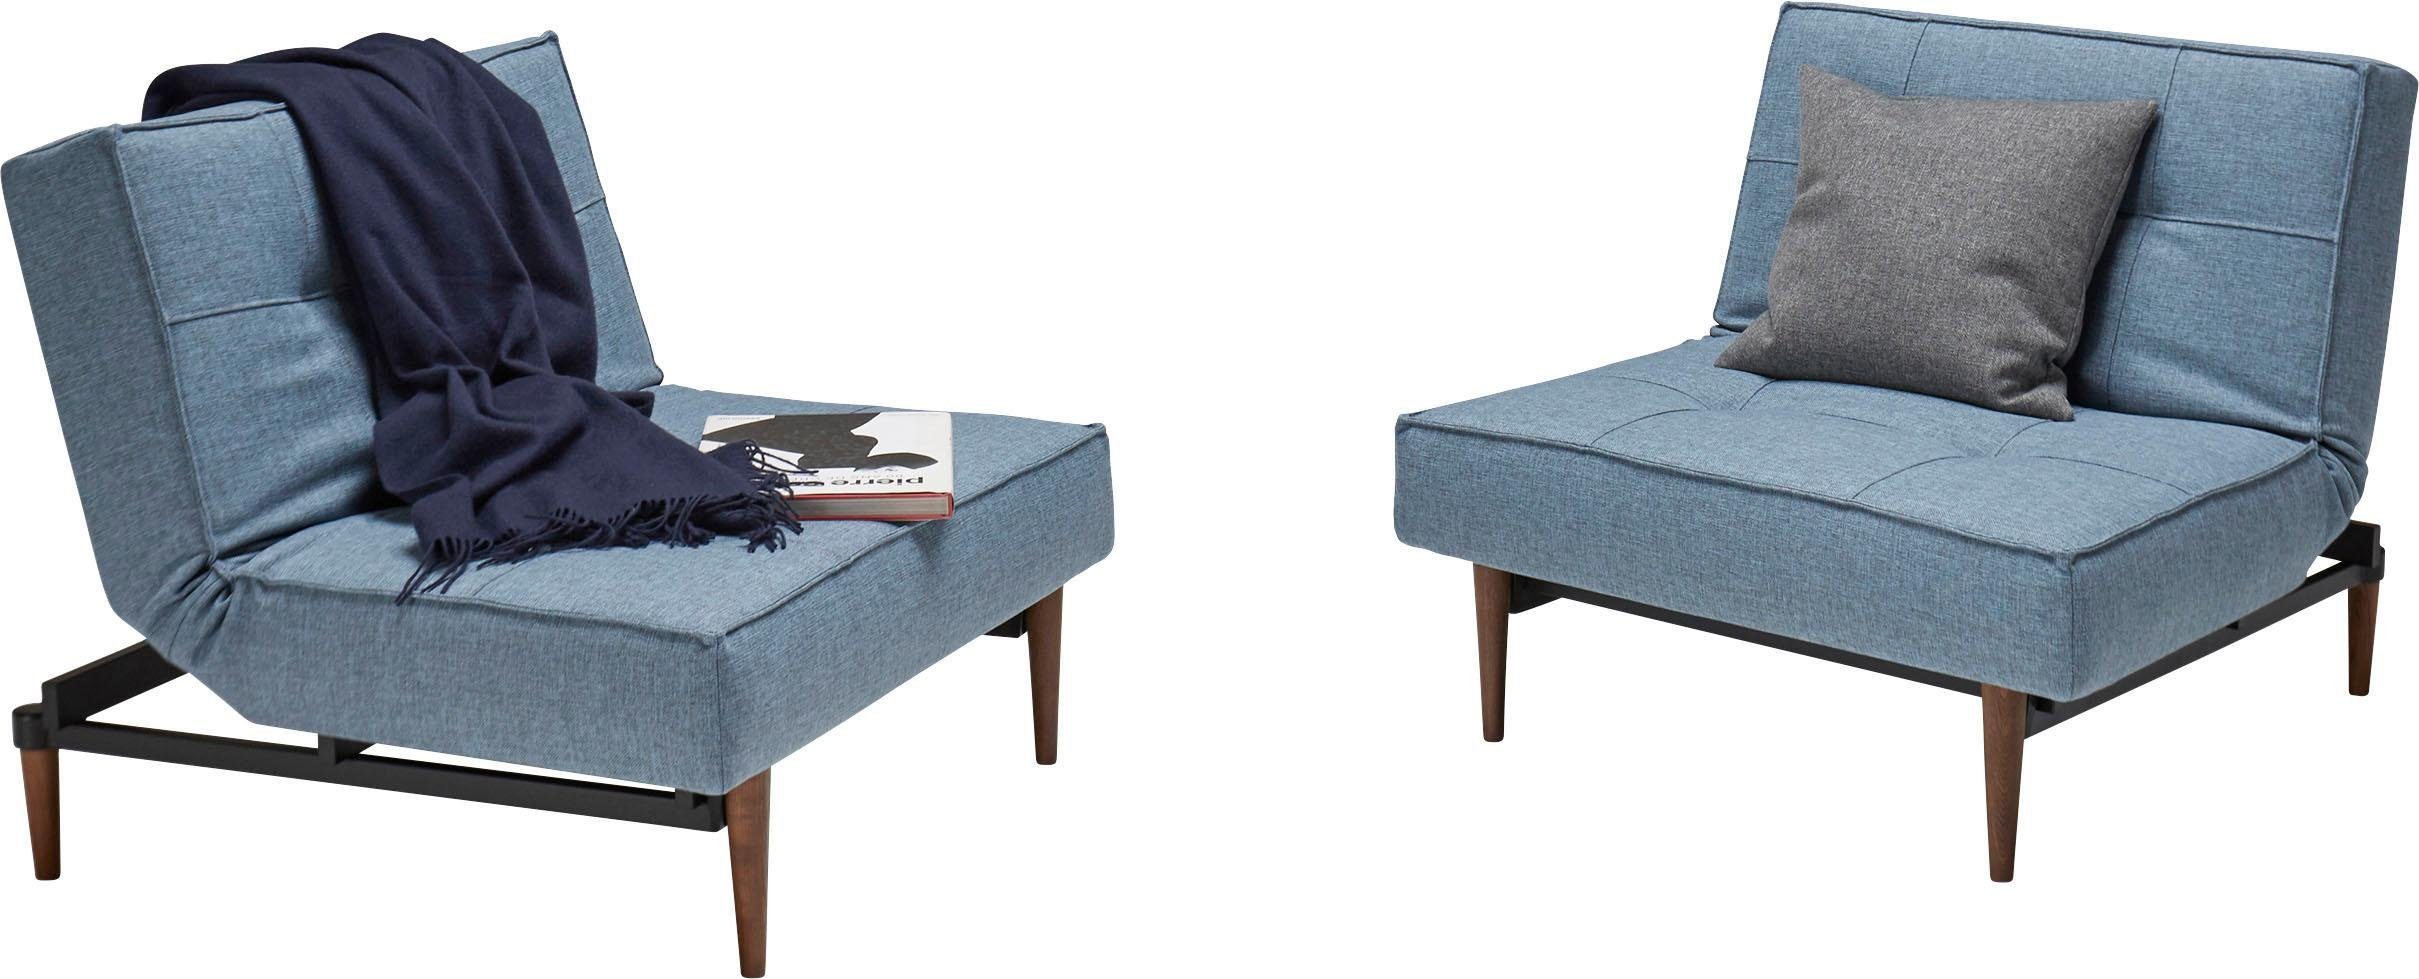 Splitback, dunklen skandinavischen in Beinen, Styletto Design ™ Sessel INNOVATION LIVING mit